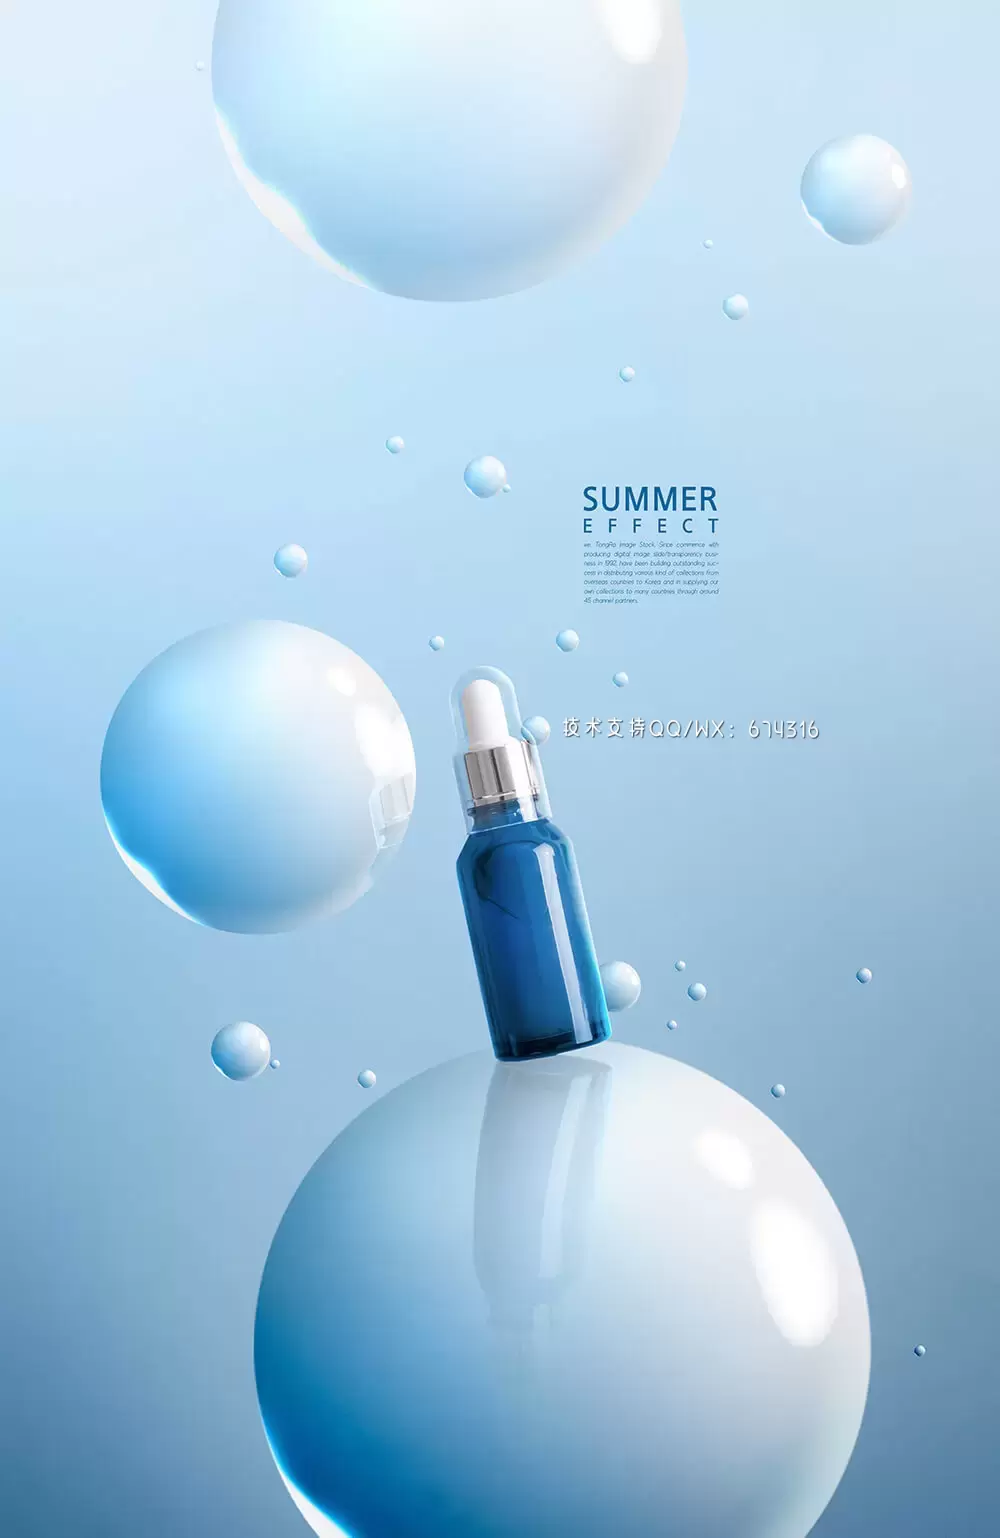 光泽圆球夏季化妆品广告海报设计模板 (psd)插图